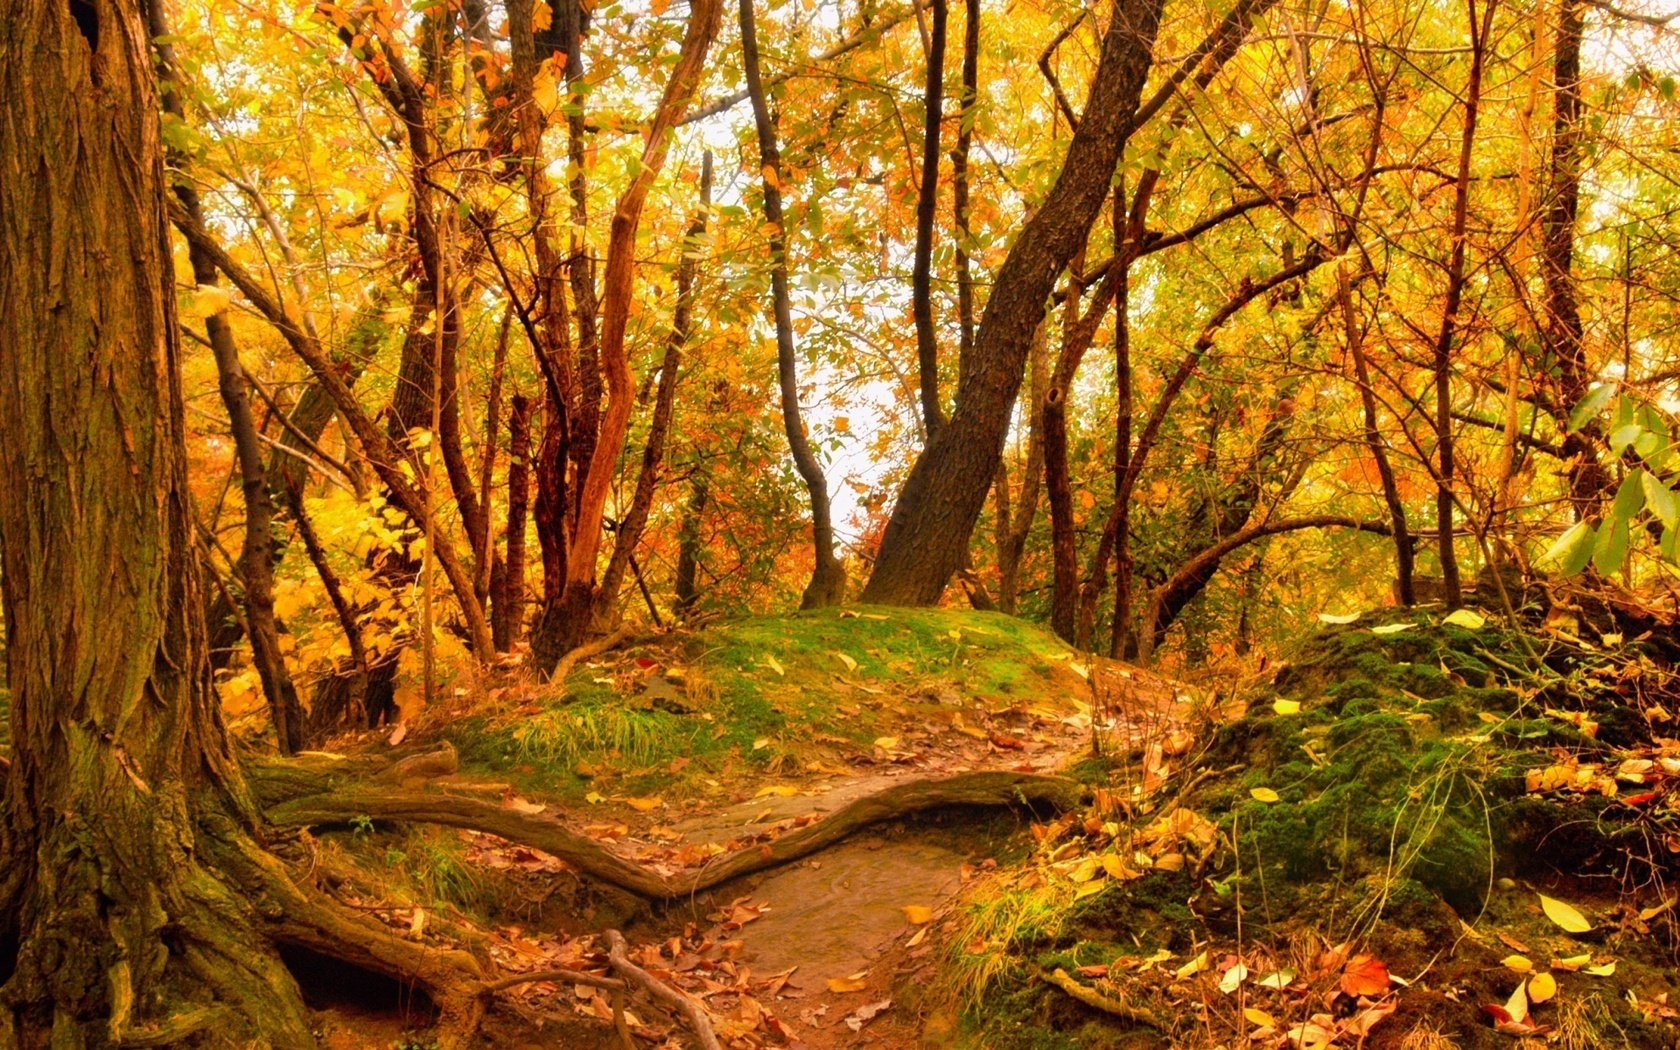 пожелтевшая листва лес деревья холмики листопад золотая пора бабье лето желтые листья